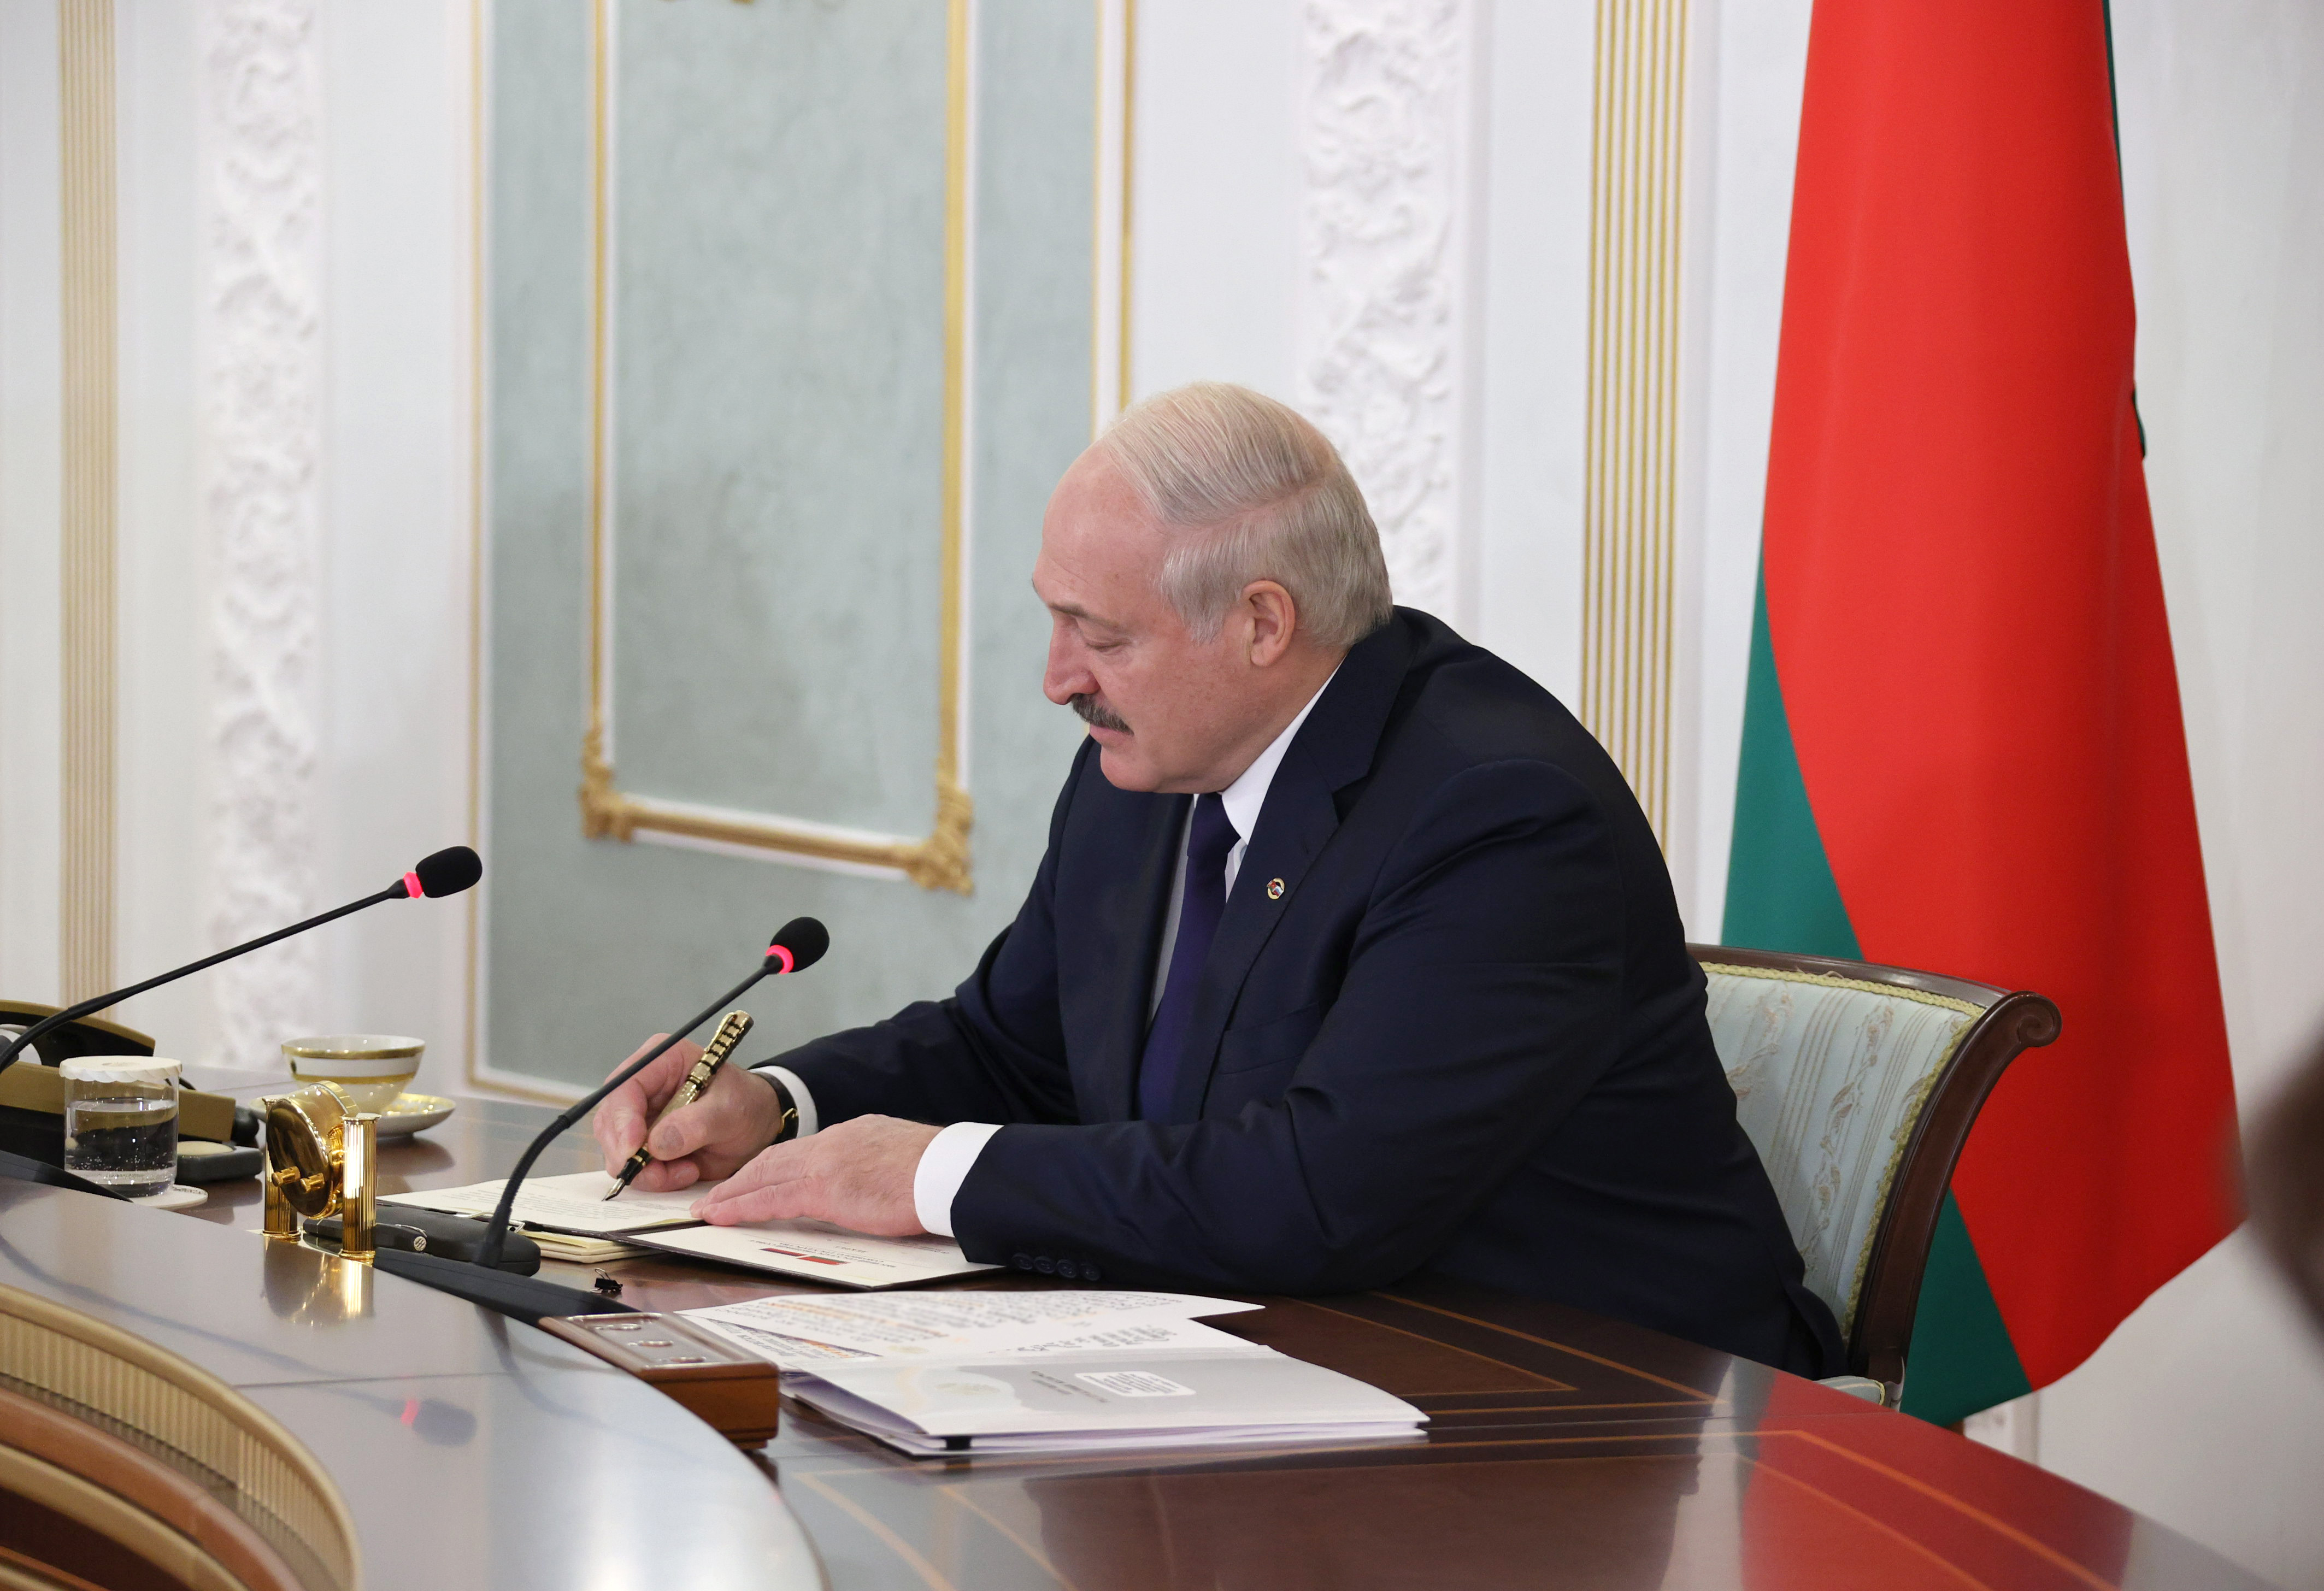 Александр Лукашенко предложил создать медиахолдинг Союзного государства